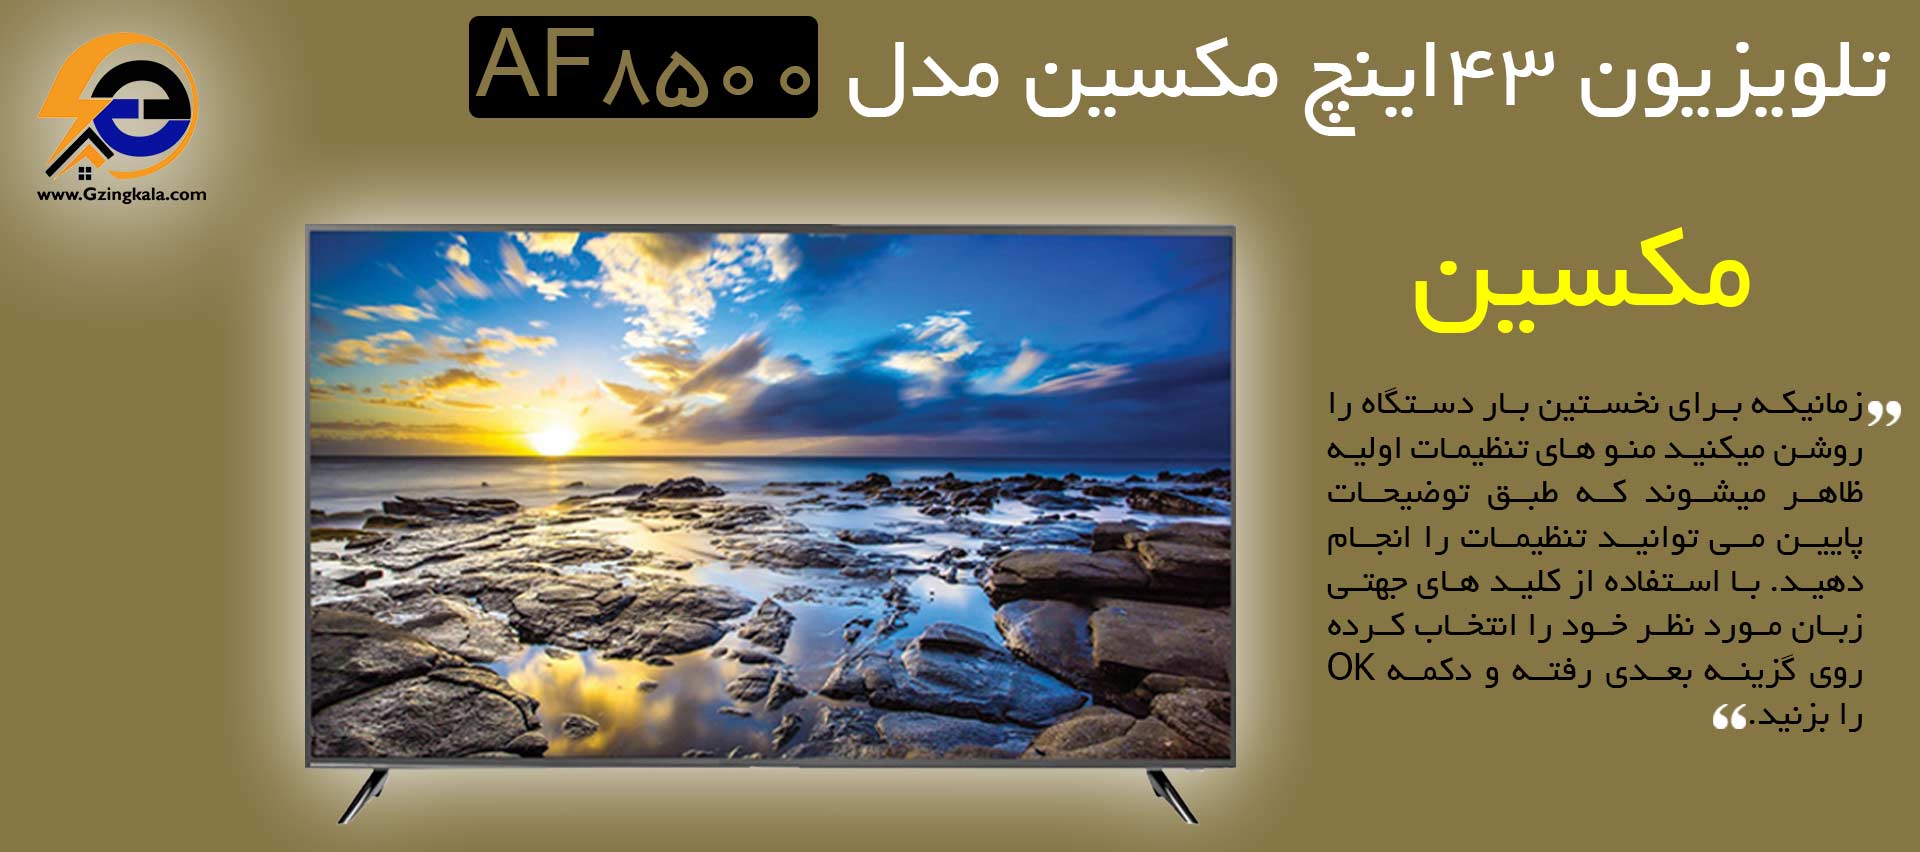 تلویزیون ۴۳ اینچ ماکسینی مدل AF8500